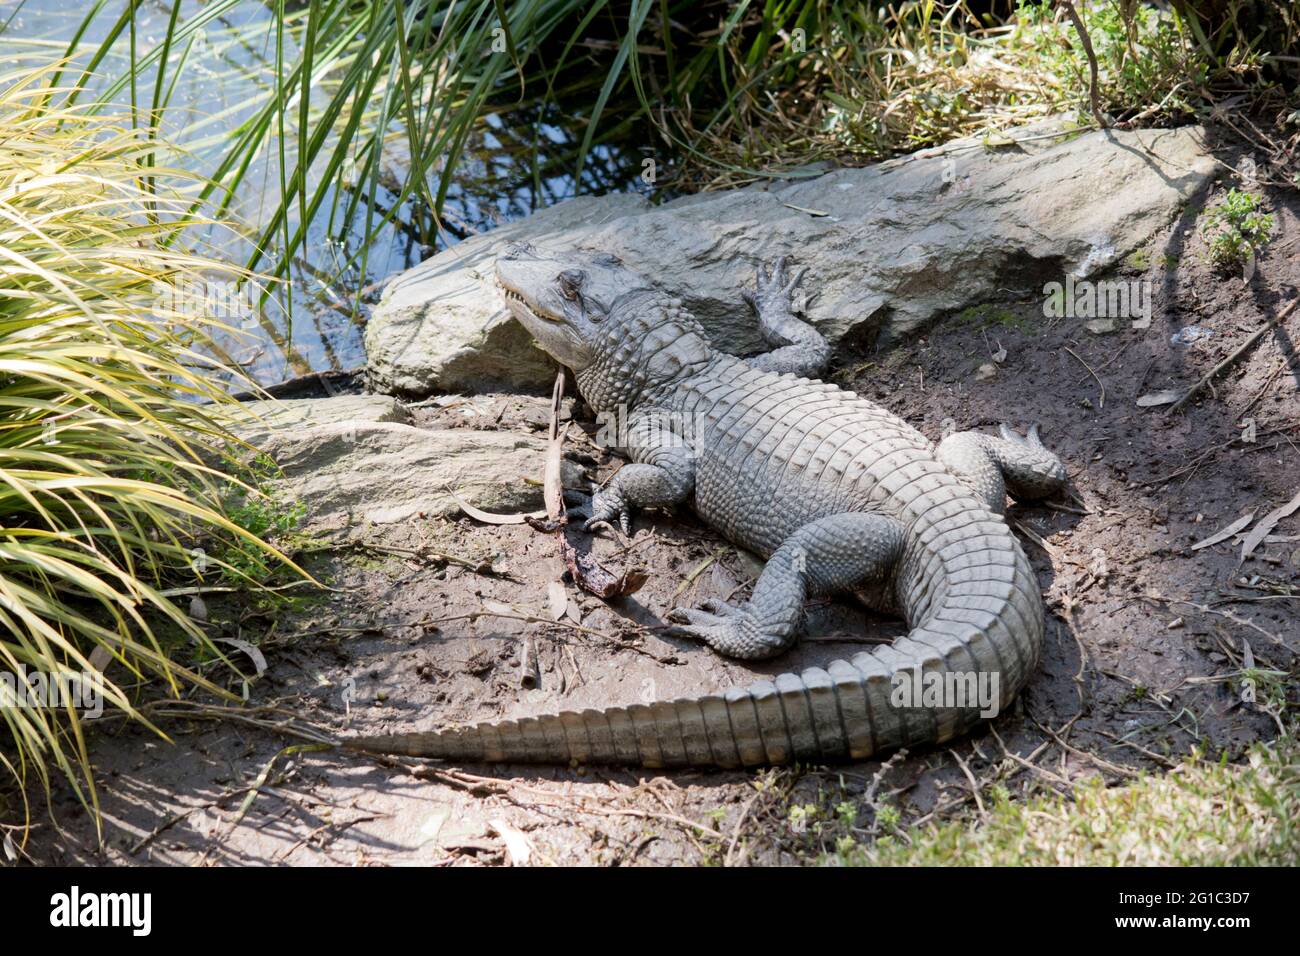 l'alligator se repose au soleil car il est sang froid Banque D'Images